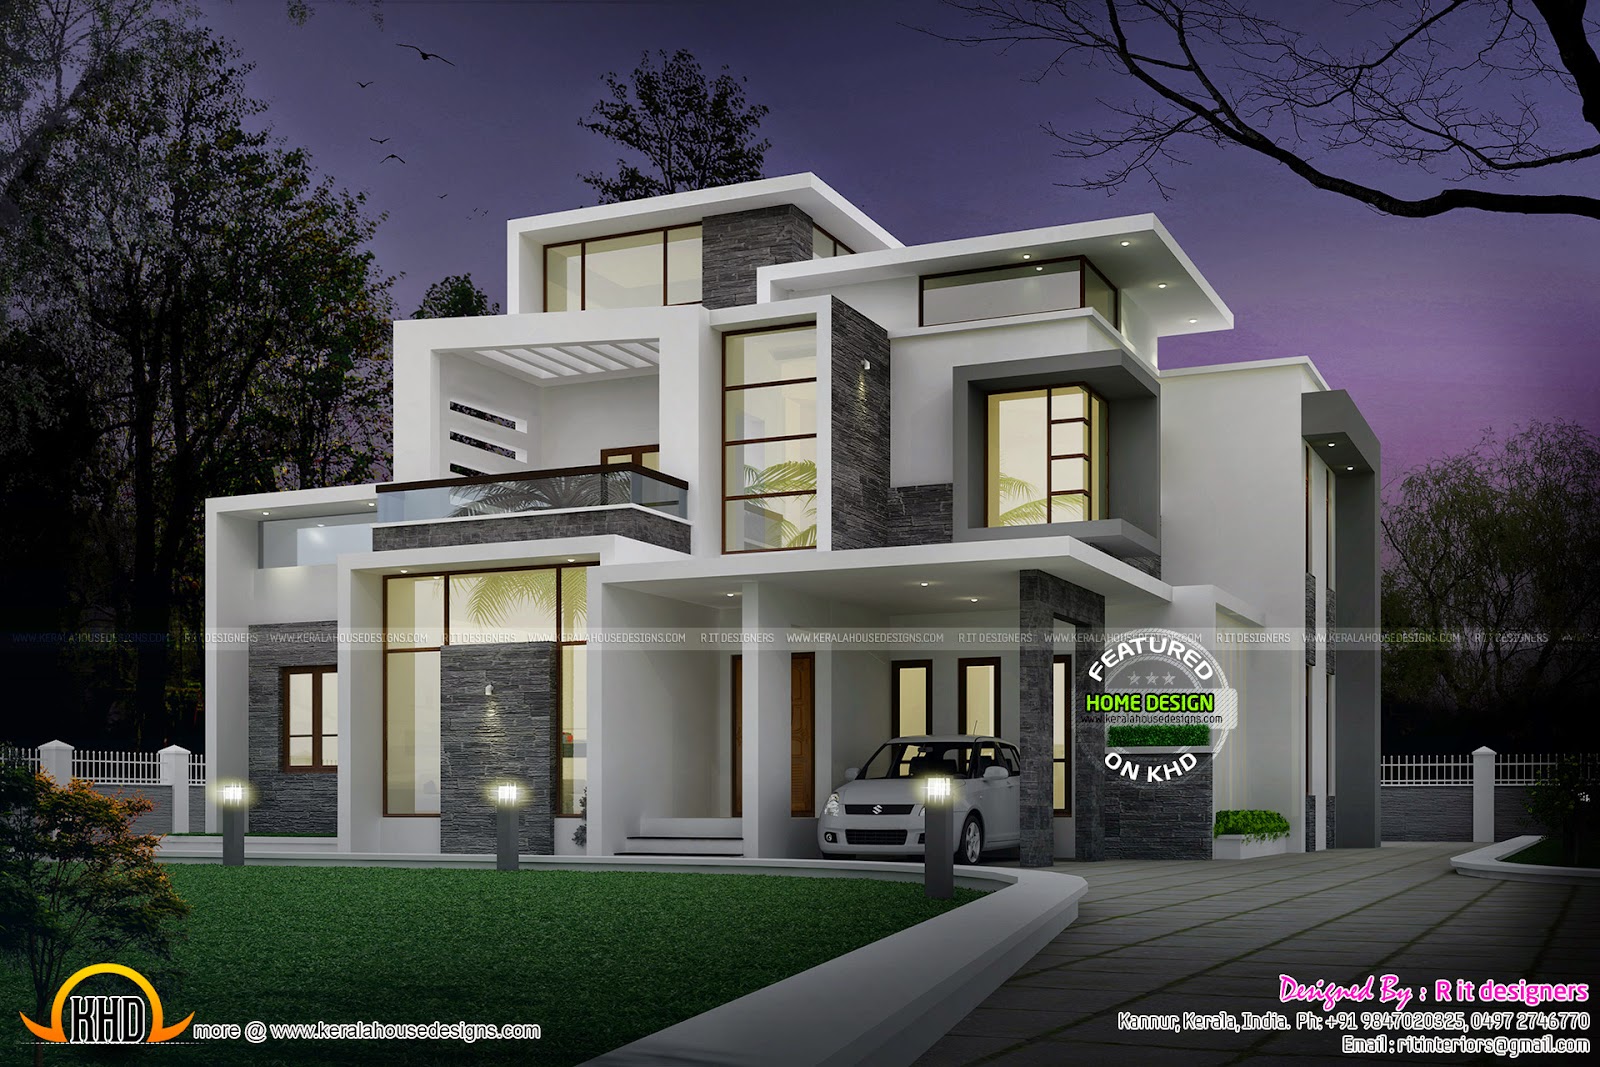 Grand contemporary home design - Kerala home design and floor plans